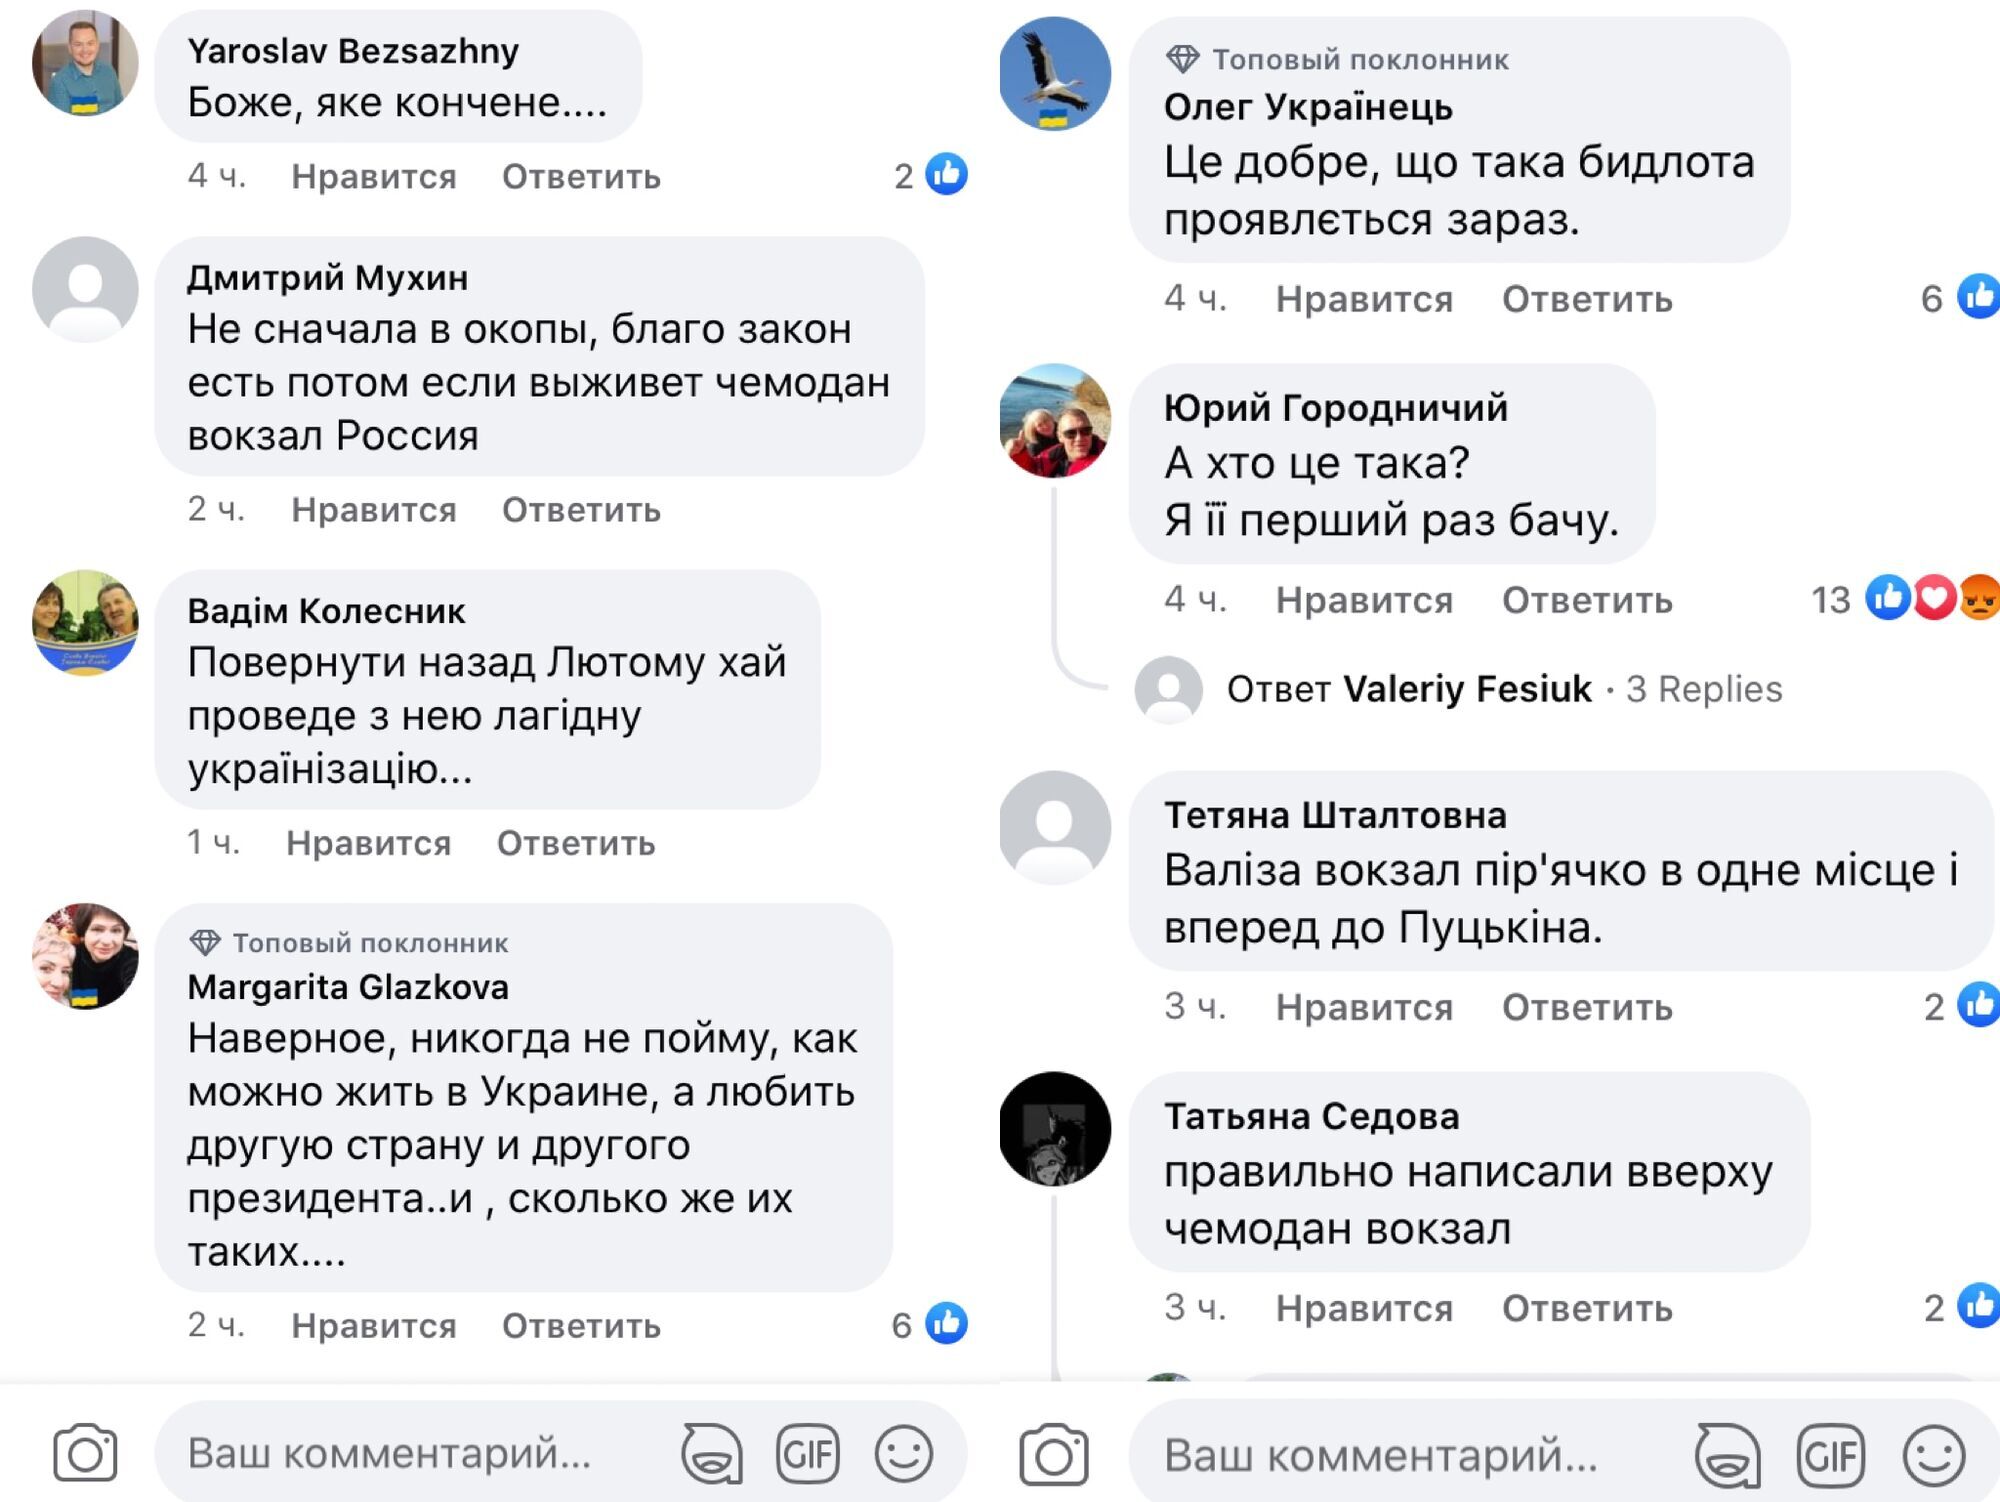 Комментарии под новостью о заявлении Снежаны Егоровой